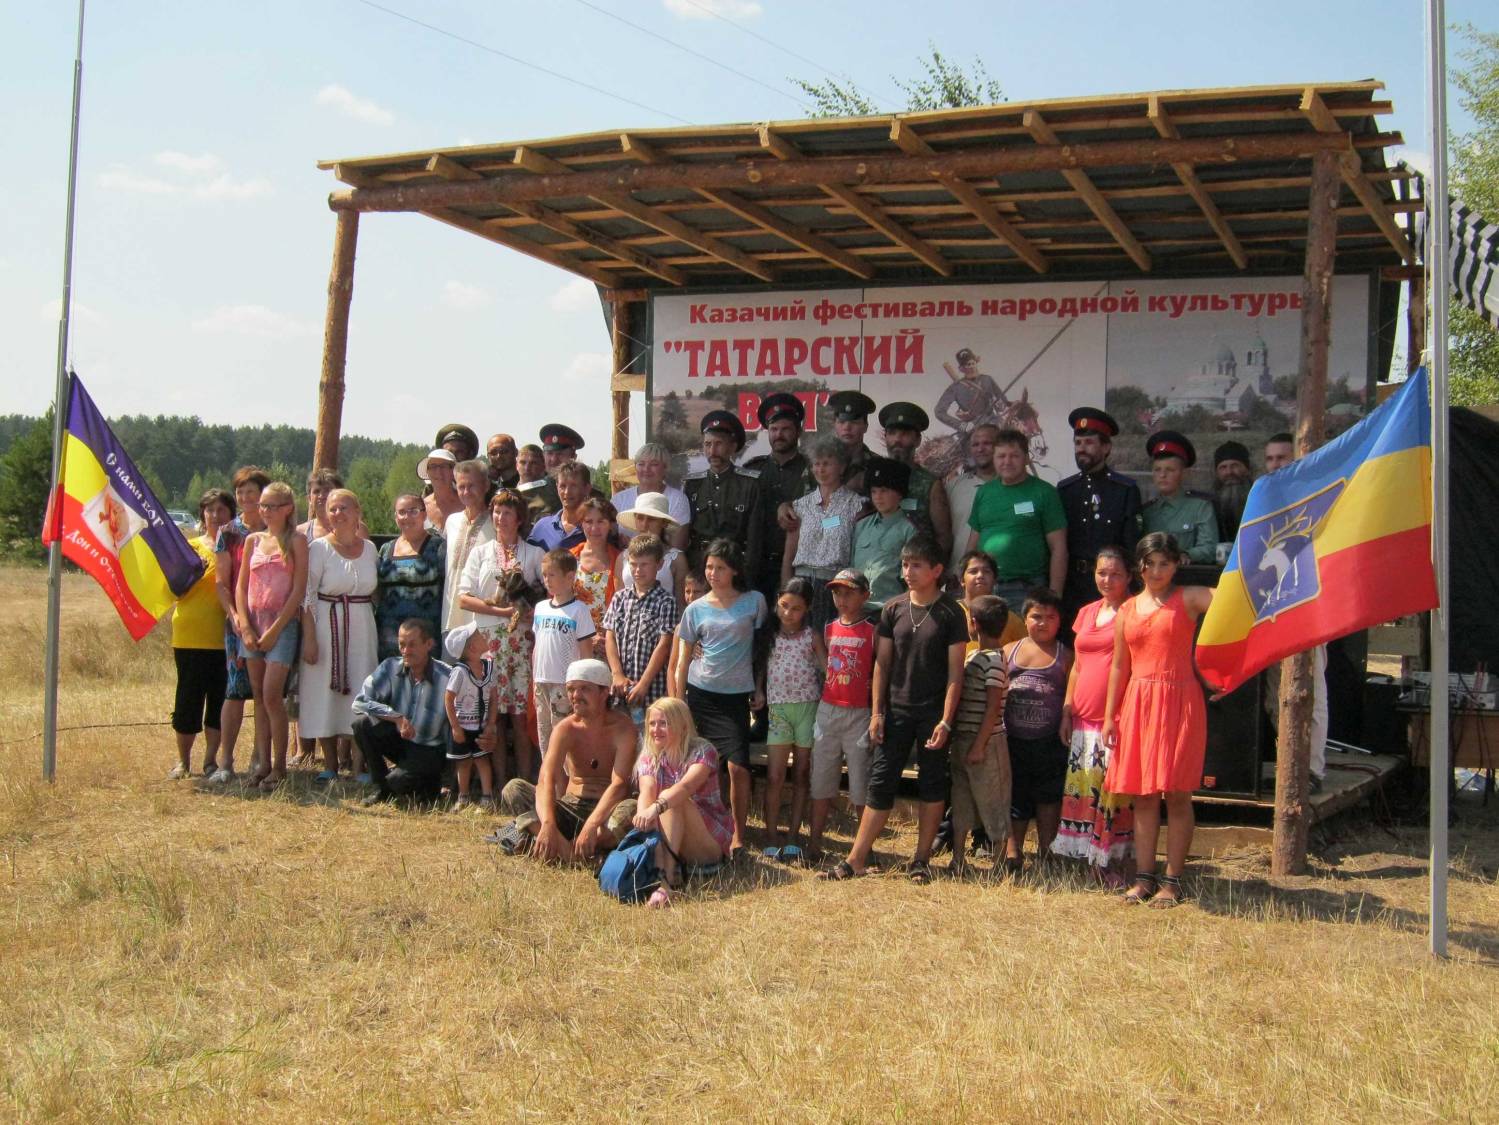 В Усмани прошел казачий фестиваль народной культуры «Татарский вал»